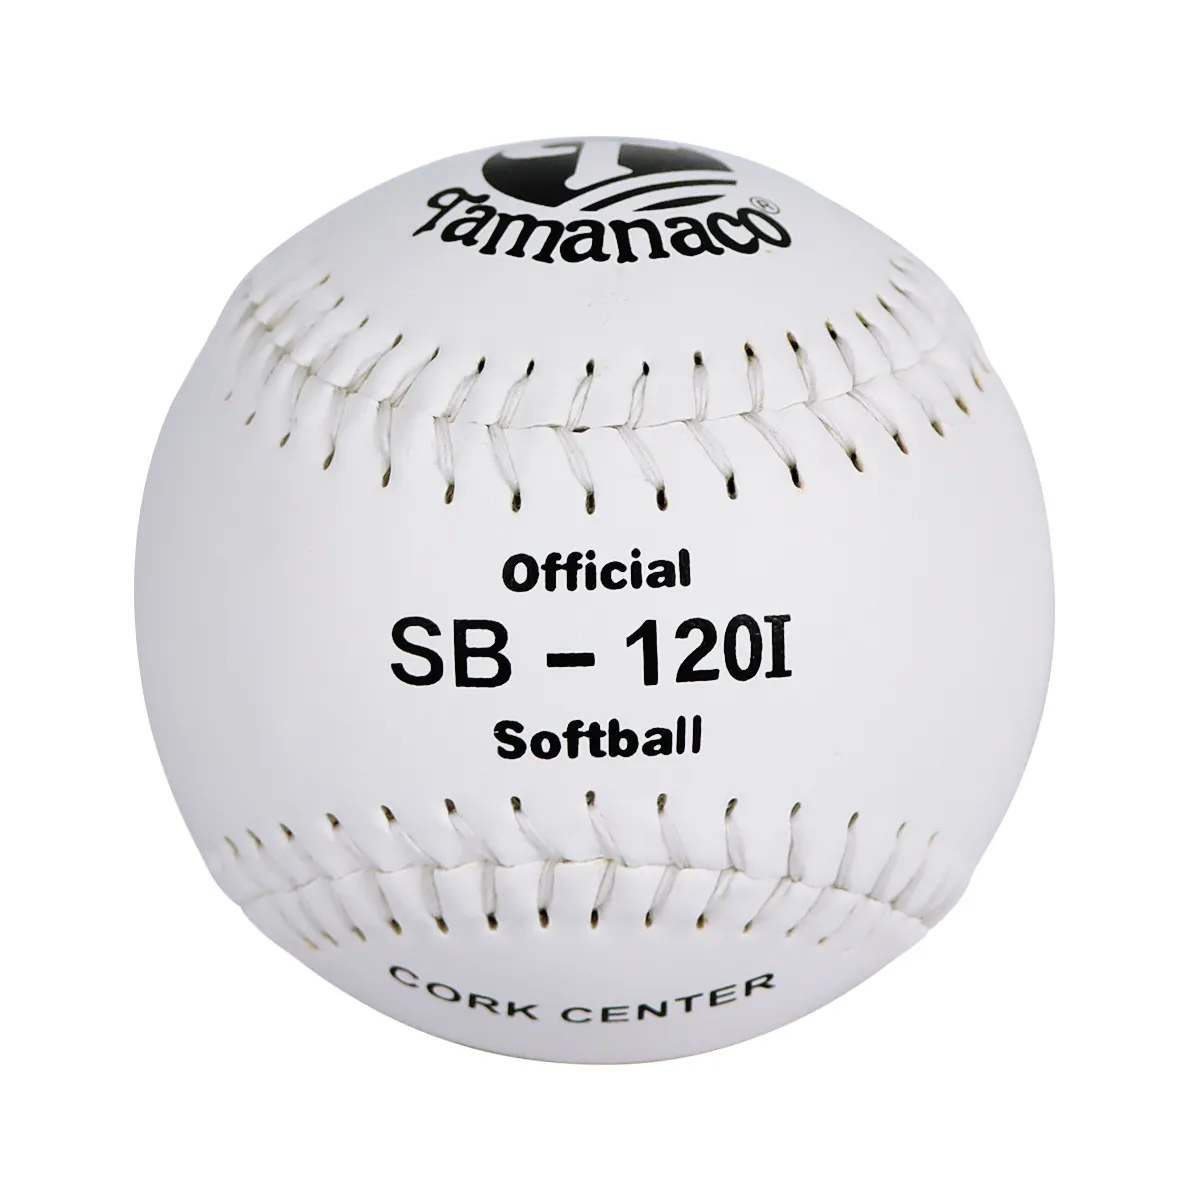 La fabbrica vende direttamente le palline da softball pelota de softball 120 per l'allenamento e la competizione